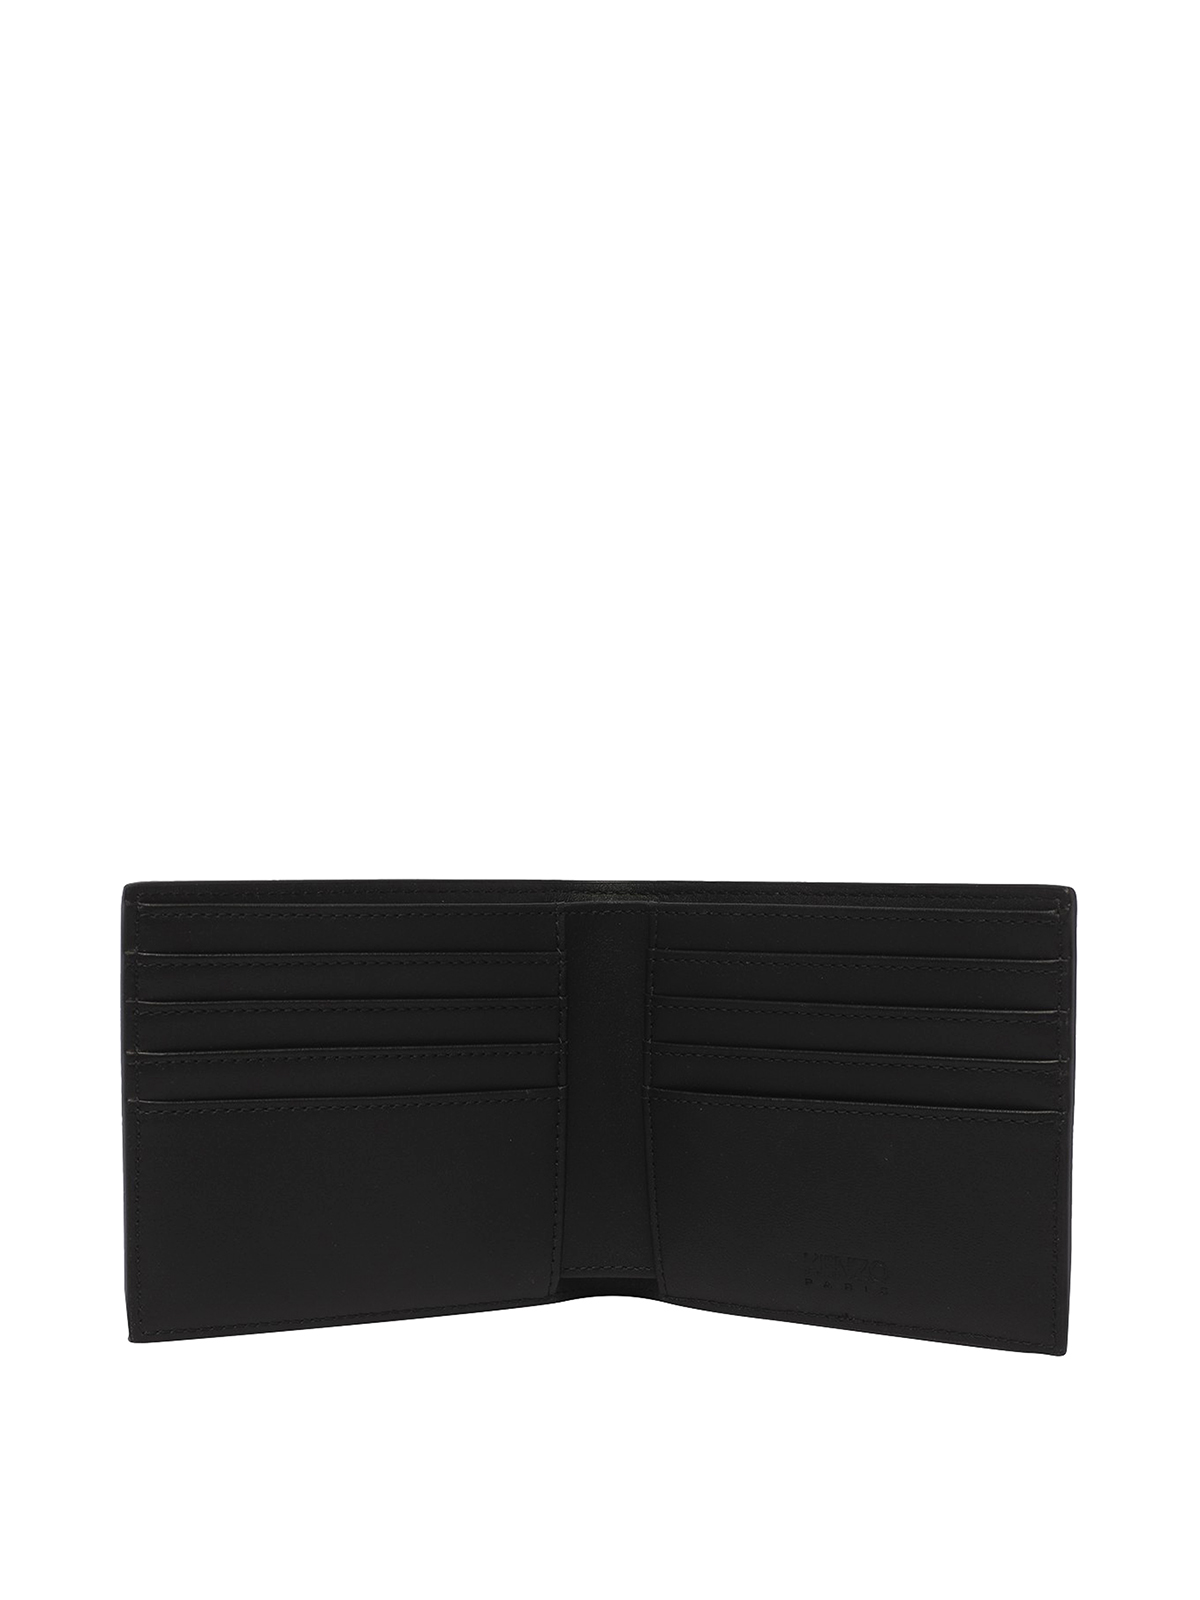 Shop Kenzo Frontal Logo Leather Wallet In Black